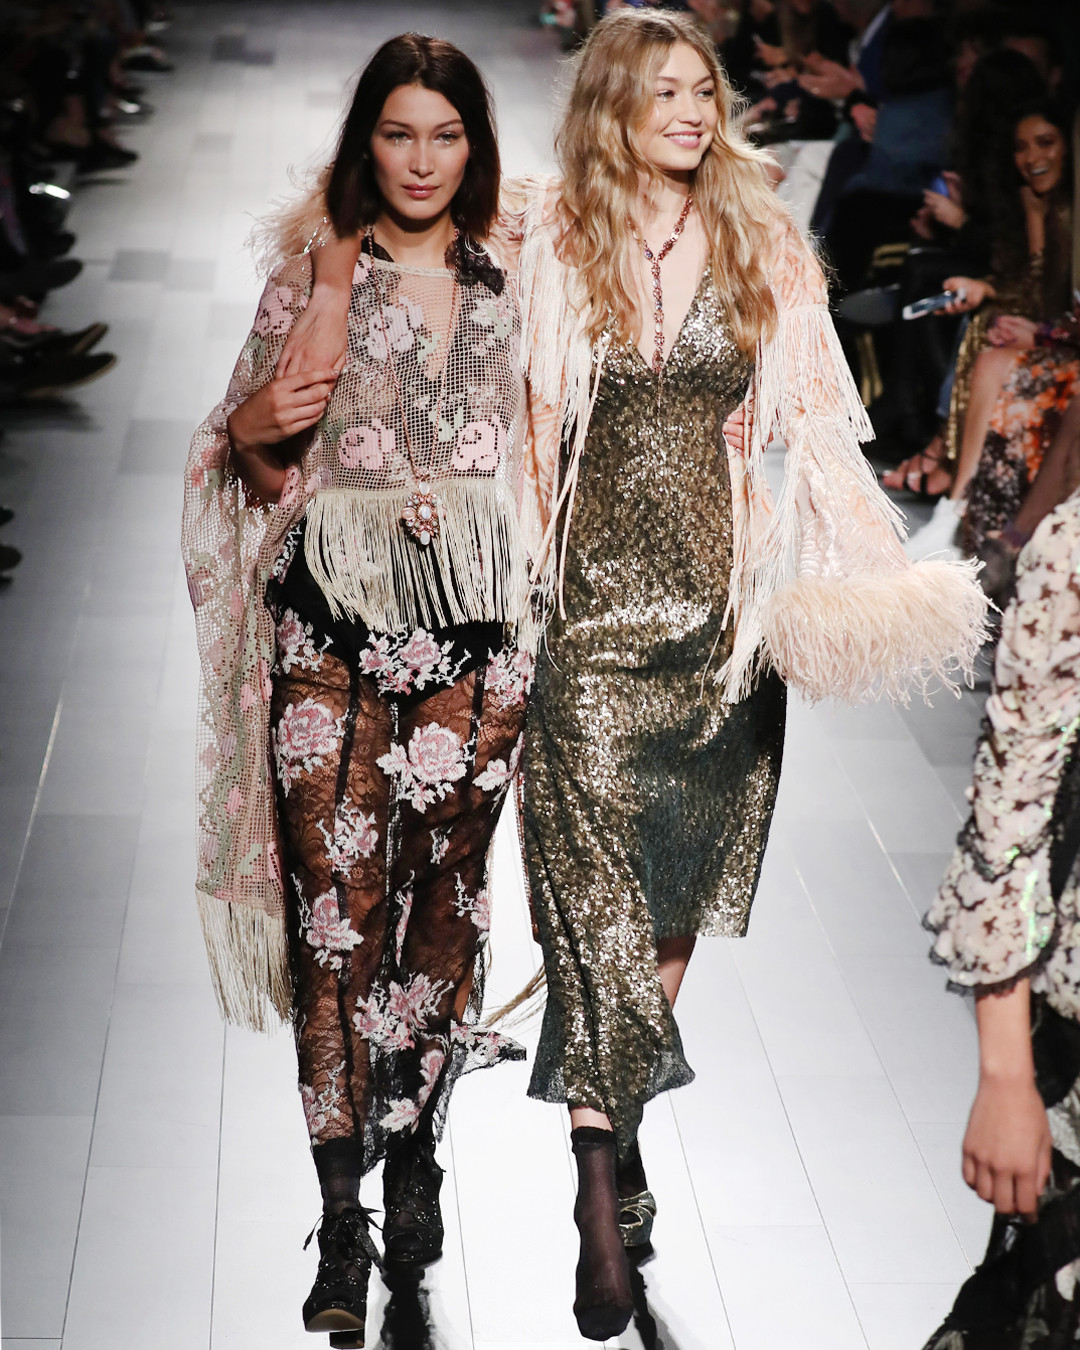 Bella and Gigi Hadid stunned at NY Fashion Week runway show